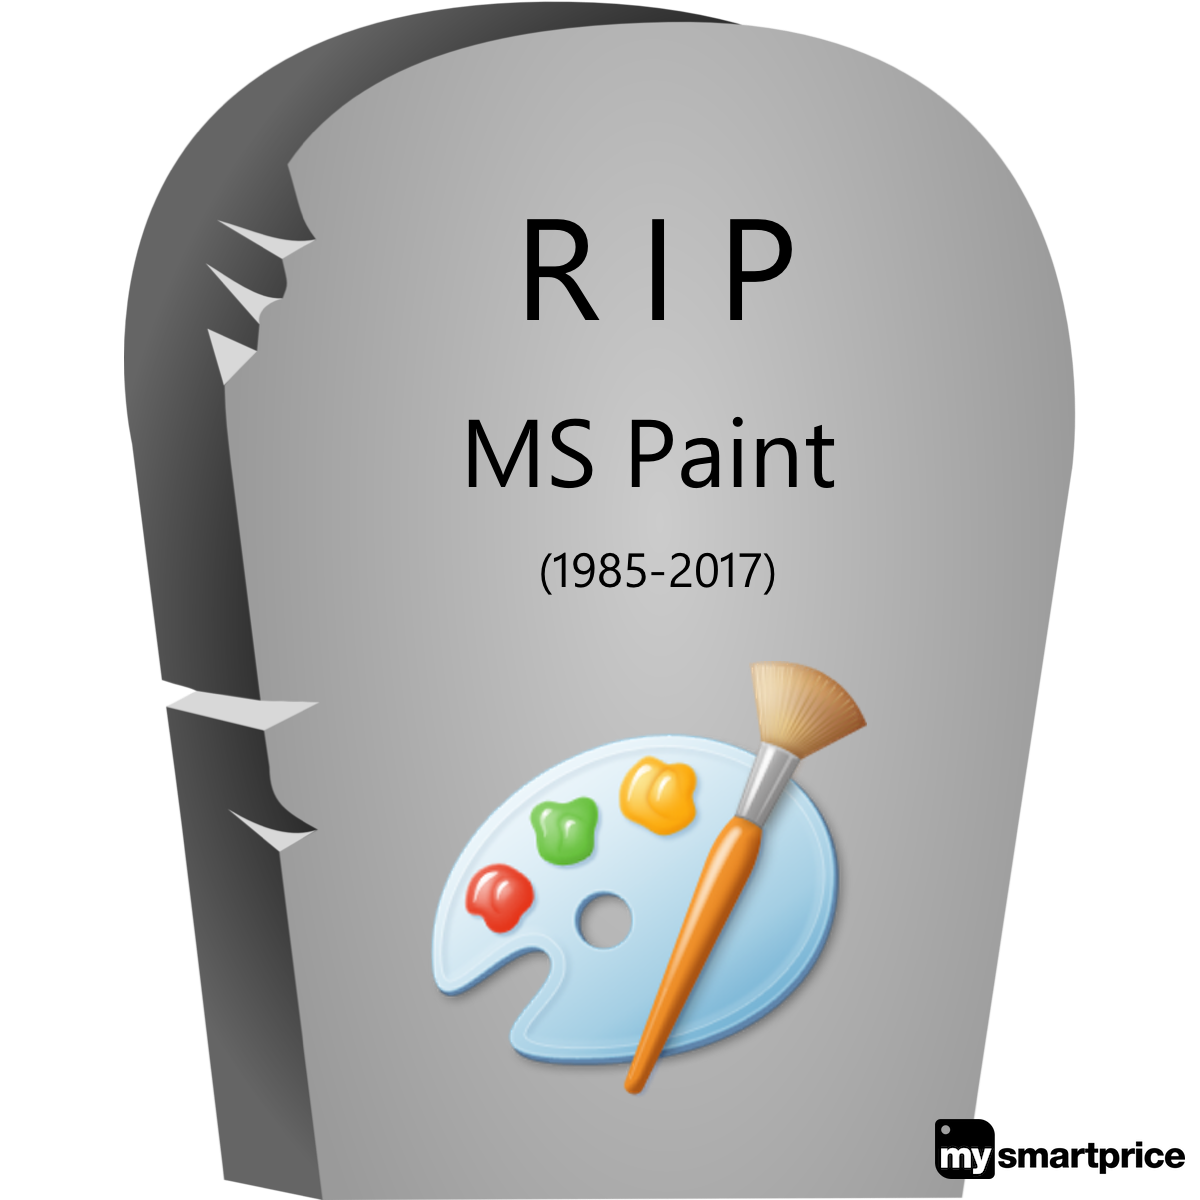 Thật là tin tưởng, Microsoft đang nỗ lực và đưa Paint và Paint 3D lên tầm cao mới. Với những tính năng độc đáo và thiết kế tối ưu, Windows 10 sẽ mang đến cho bạn trải nghiệm vẽ tranh và chỉnh sửa hình ảnh hoàn hảo nhất.